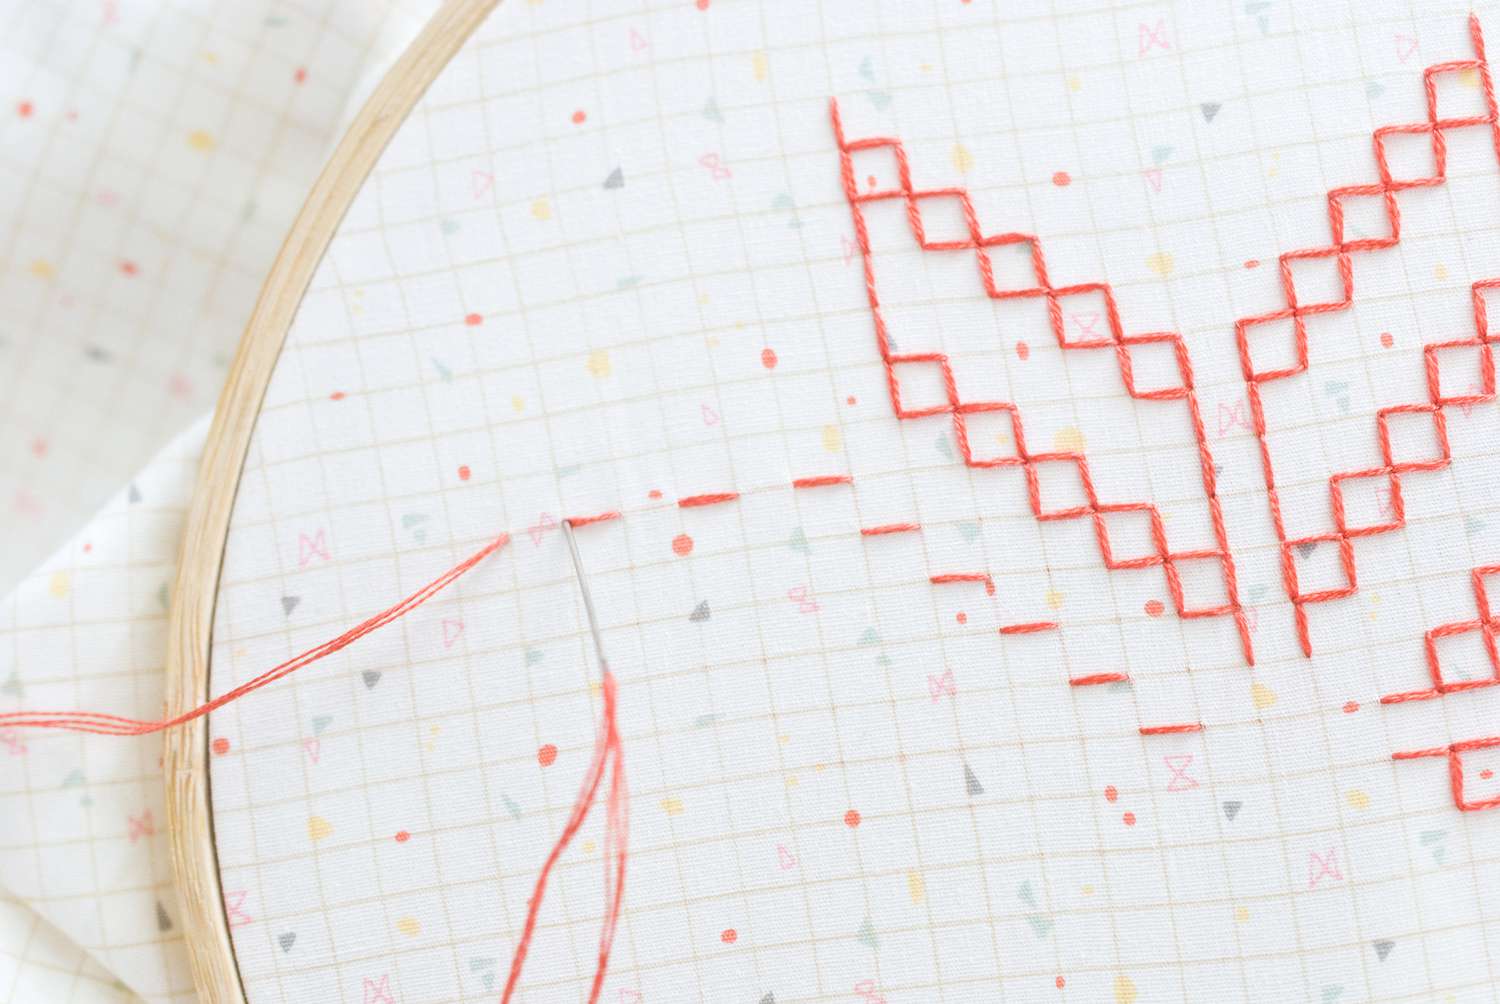 Gavnti and Murgi Stitches in Kasuti Embroidery